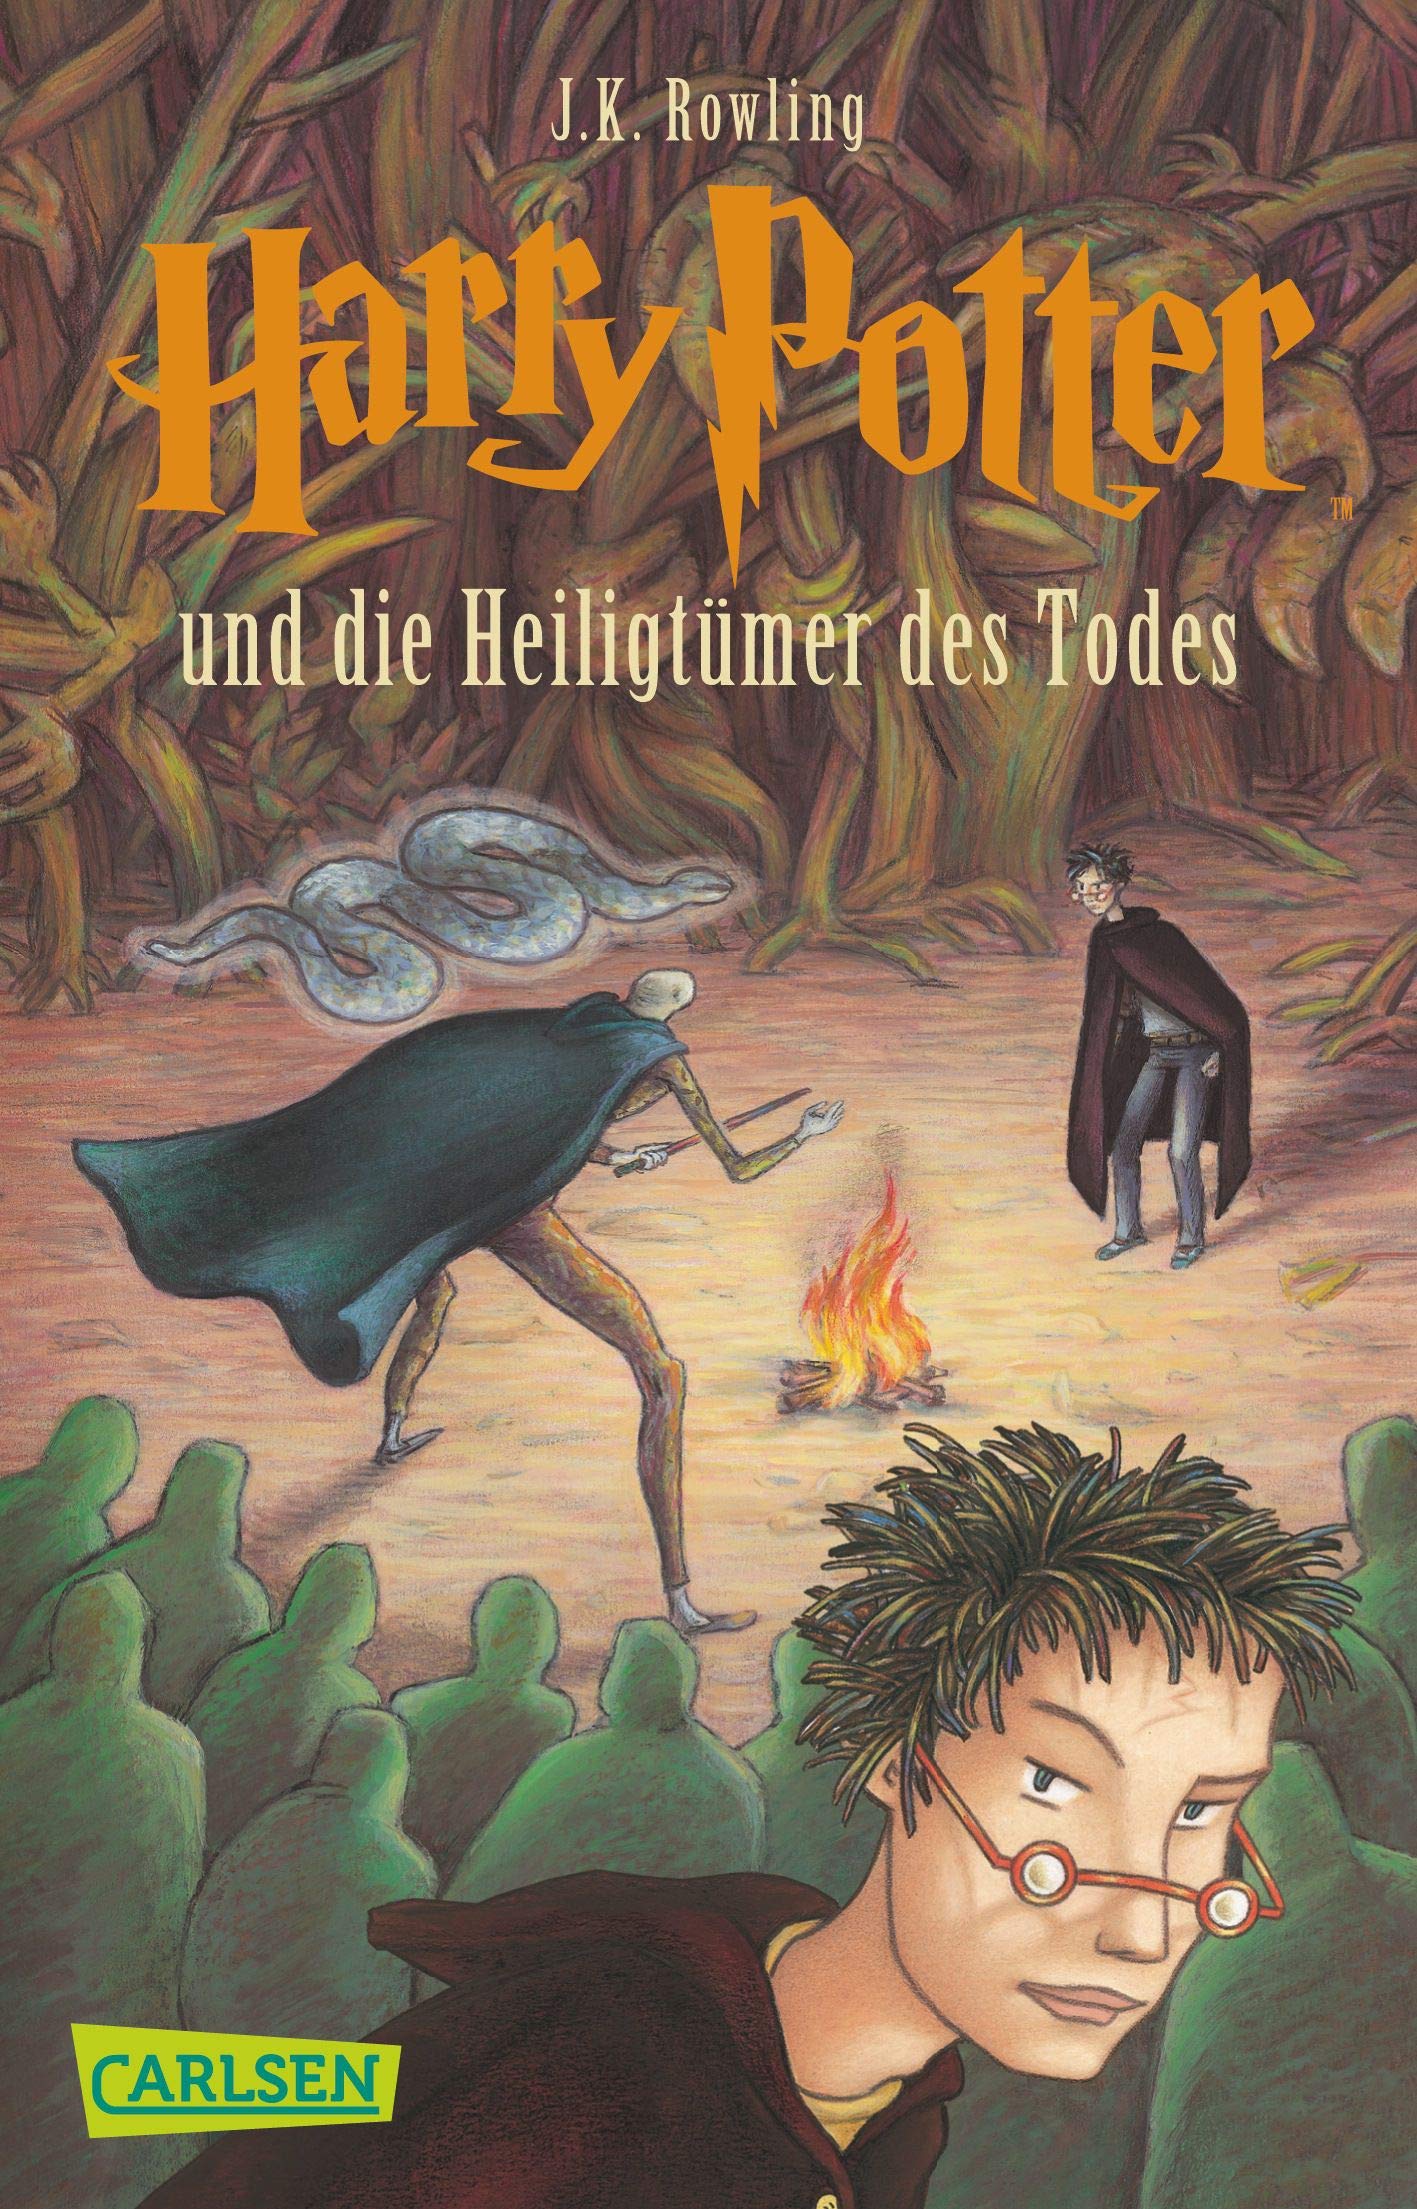 Harry Potter und die Heiligtumer des Todes